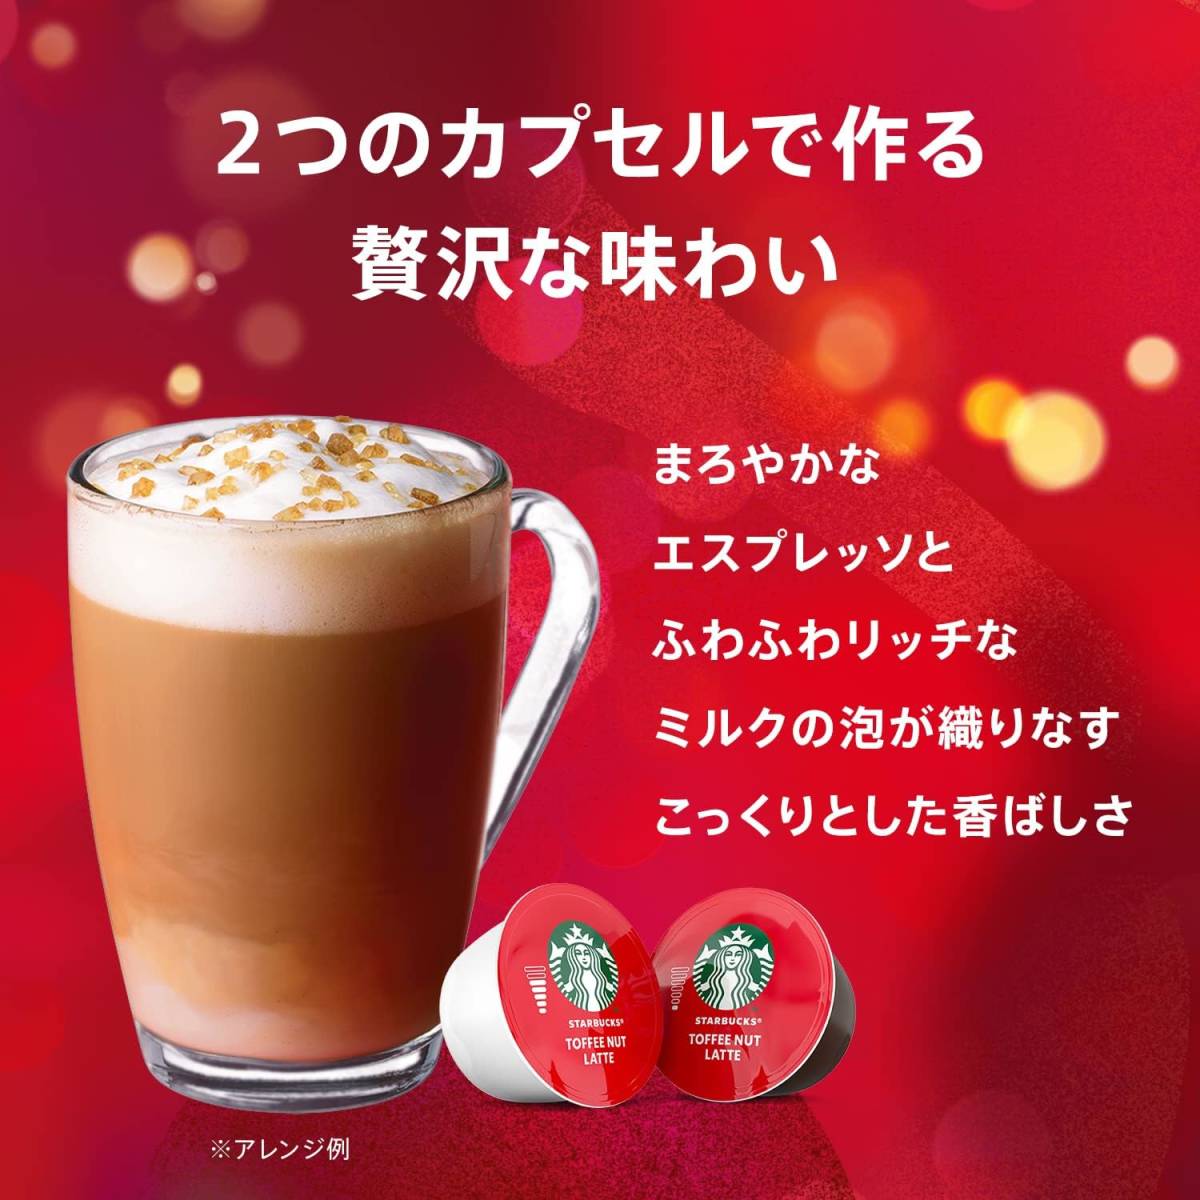 6杯分 Starbucks(スターバックス) トフィーナッツラテ ネスカフェ ドルチェ グスト 専用カプセル 12P×1箱の画像4